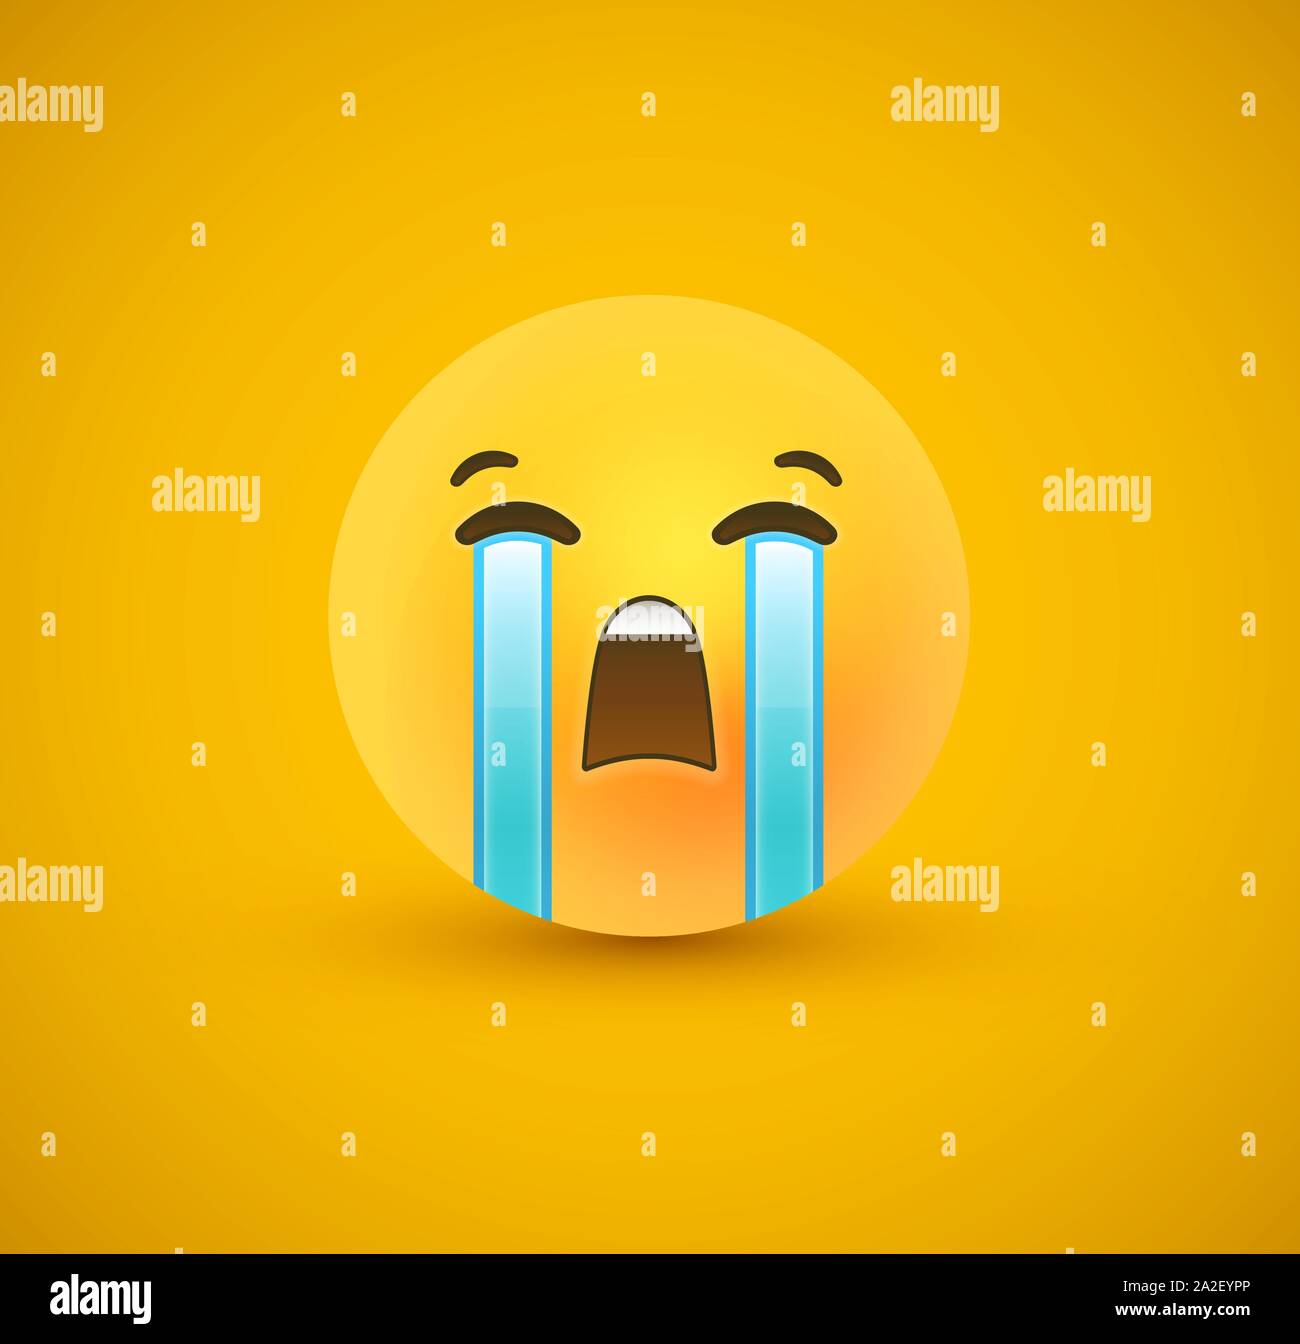 Traurig 3d emoticon Gesicht auf gelben Hintergrund. Moderne Traurigkeit Reaktion für Kinder oder Teenager Ausdruck Konzept. Realistische chat Symbol weinen Tränen. Stock Vektor